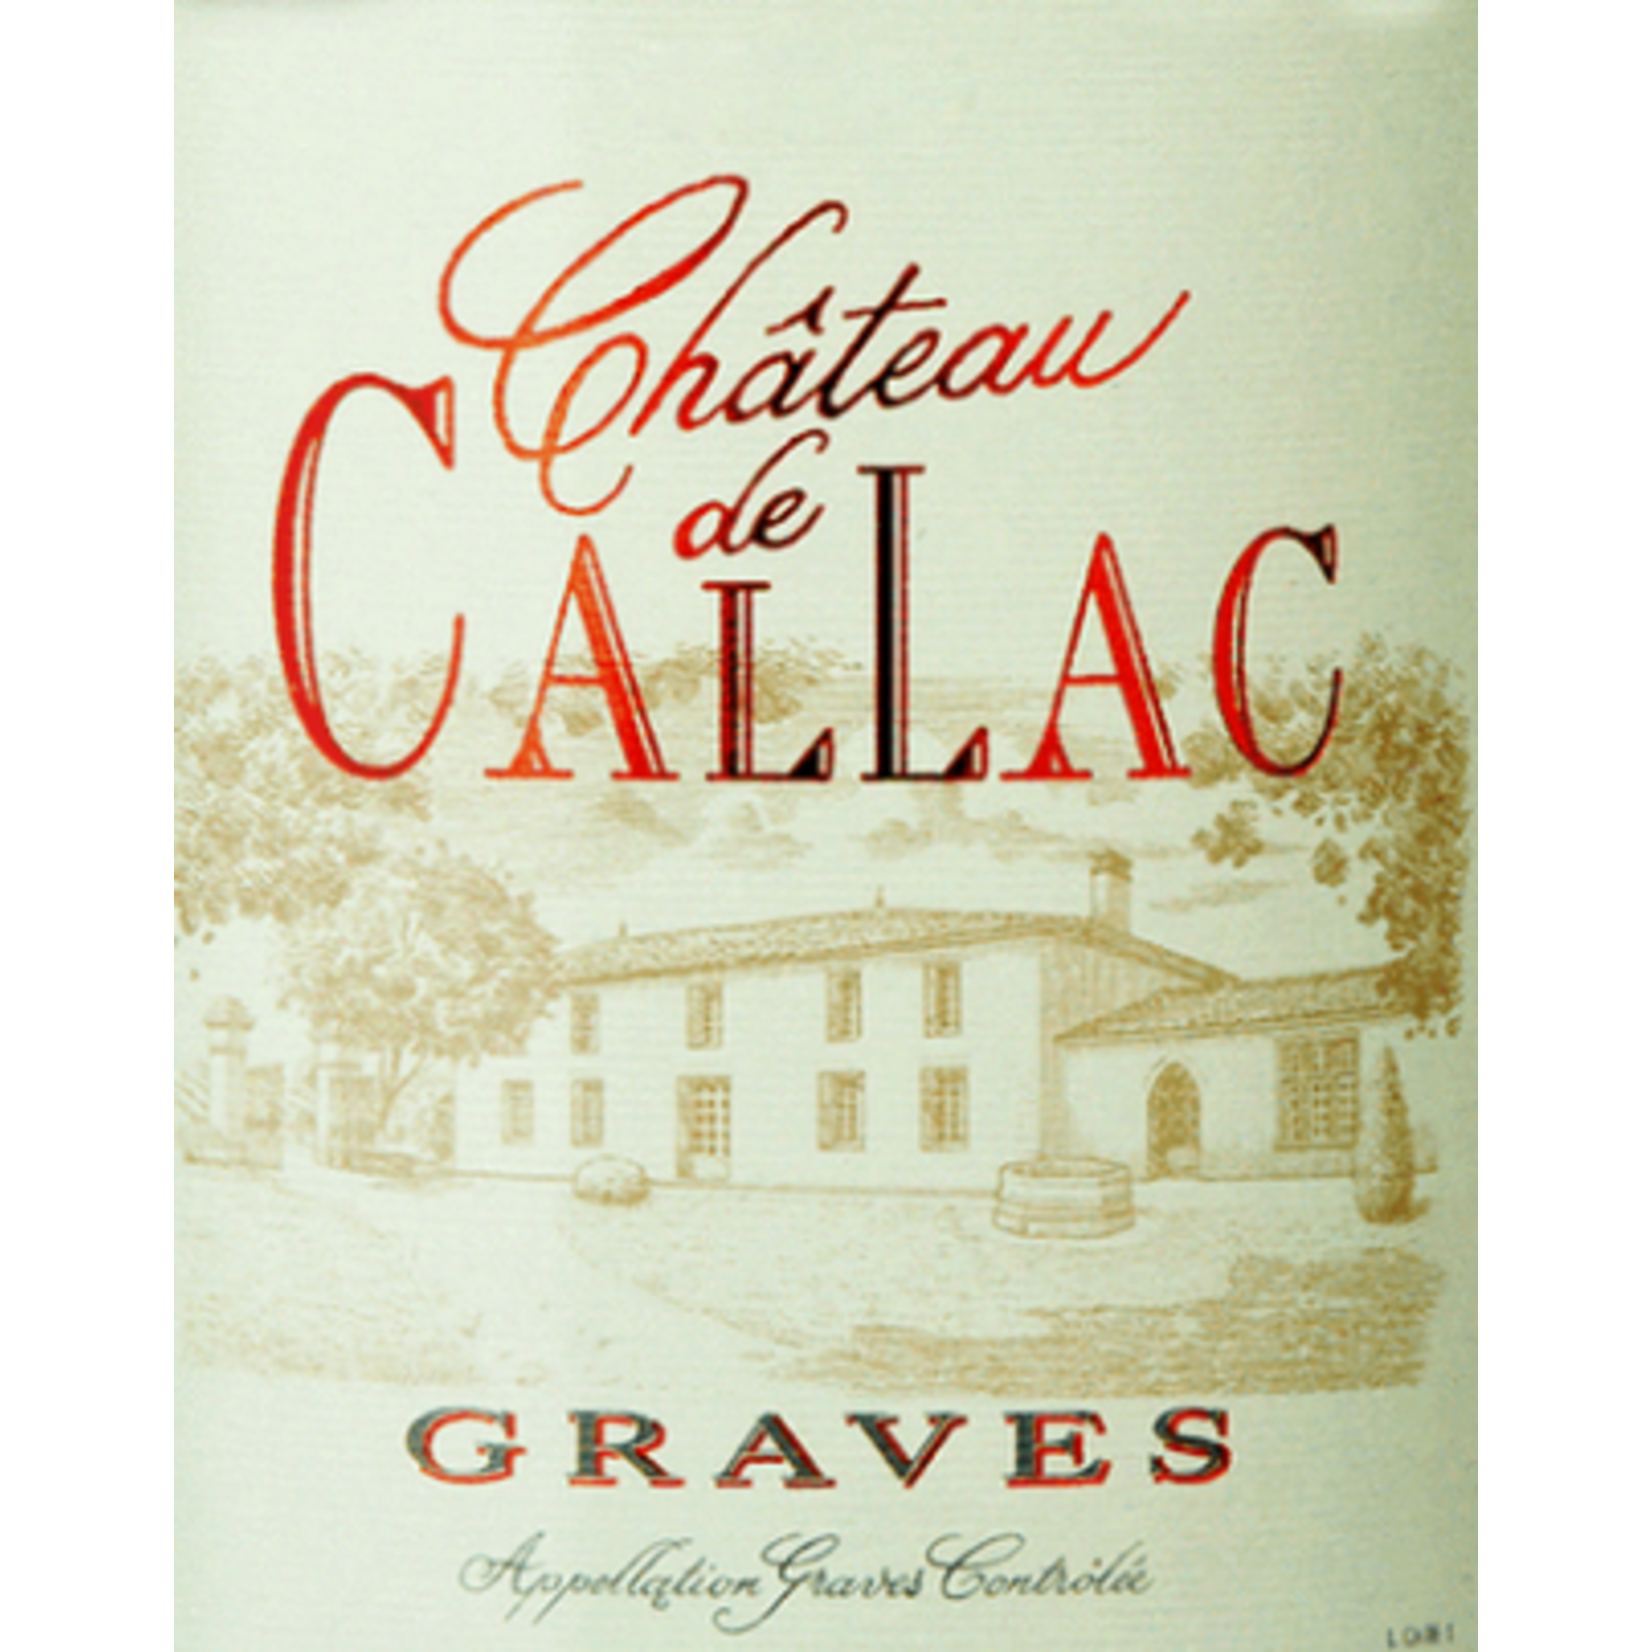 Château de Callac Maison Riviere Chateau de Callac Graves 2018 Bordeaux, France NEWV